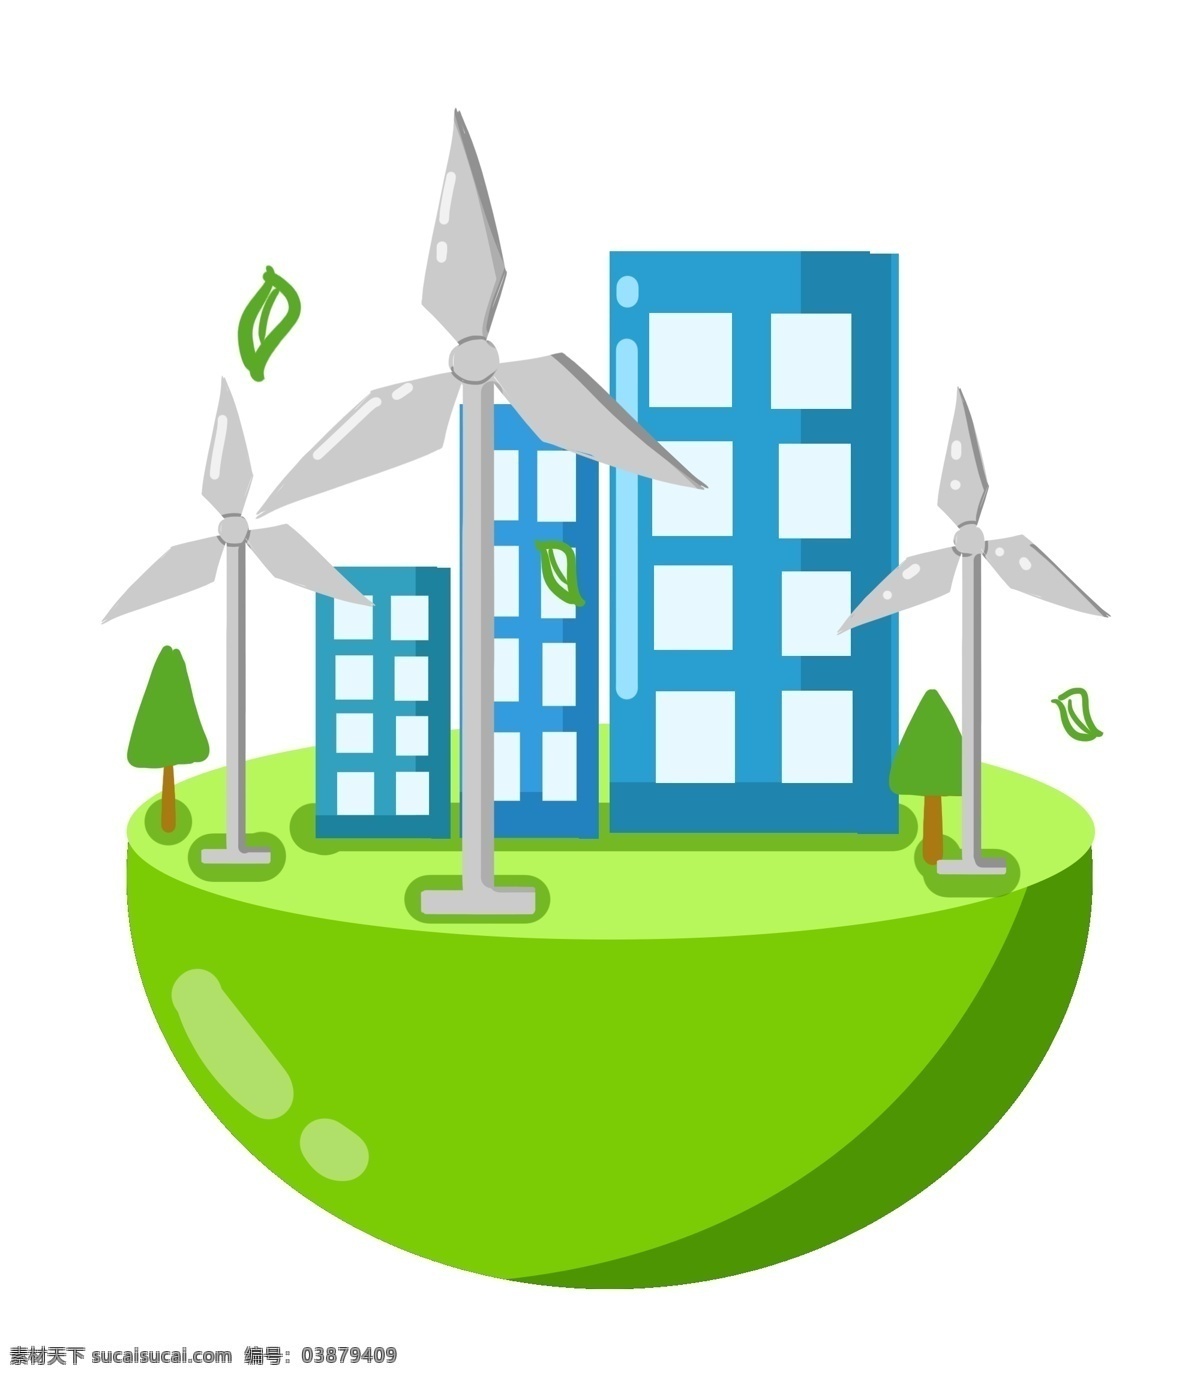 绿色 环境 风车 环保 绿色的环境 卡通插画 风车环保 风力发电 节约能源 节能减排 白色的风车